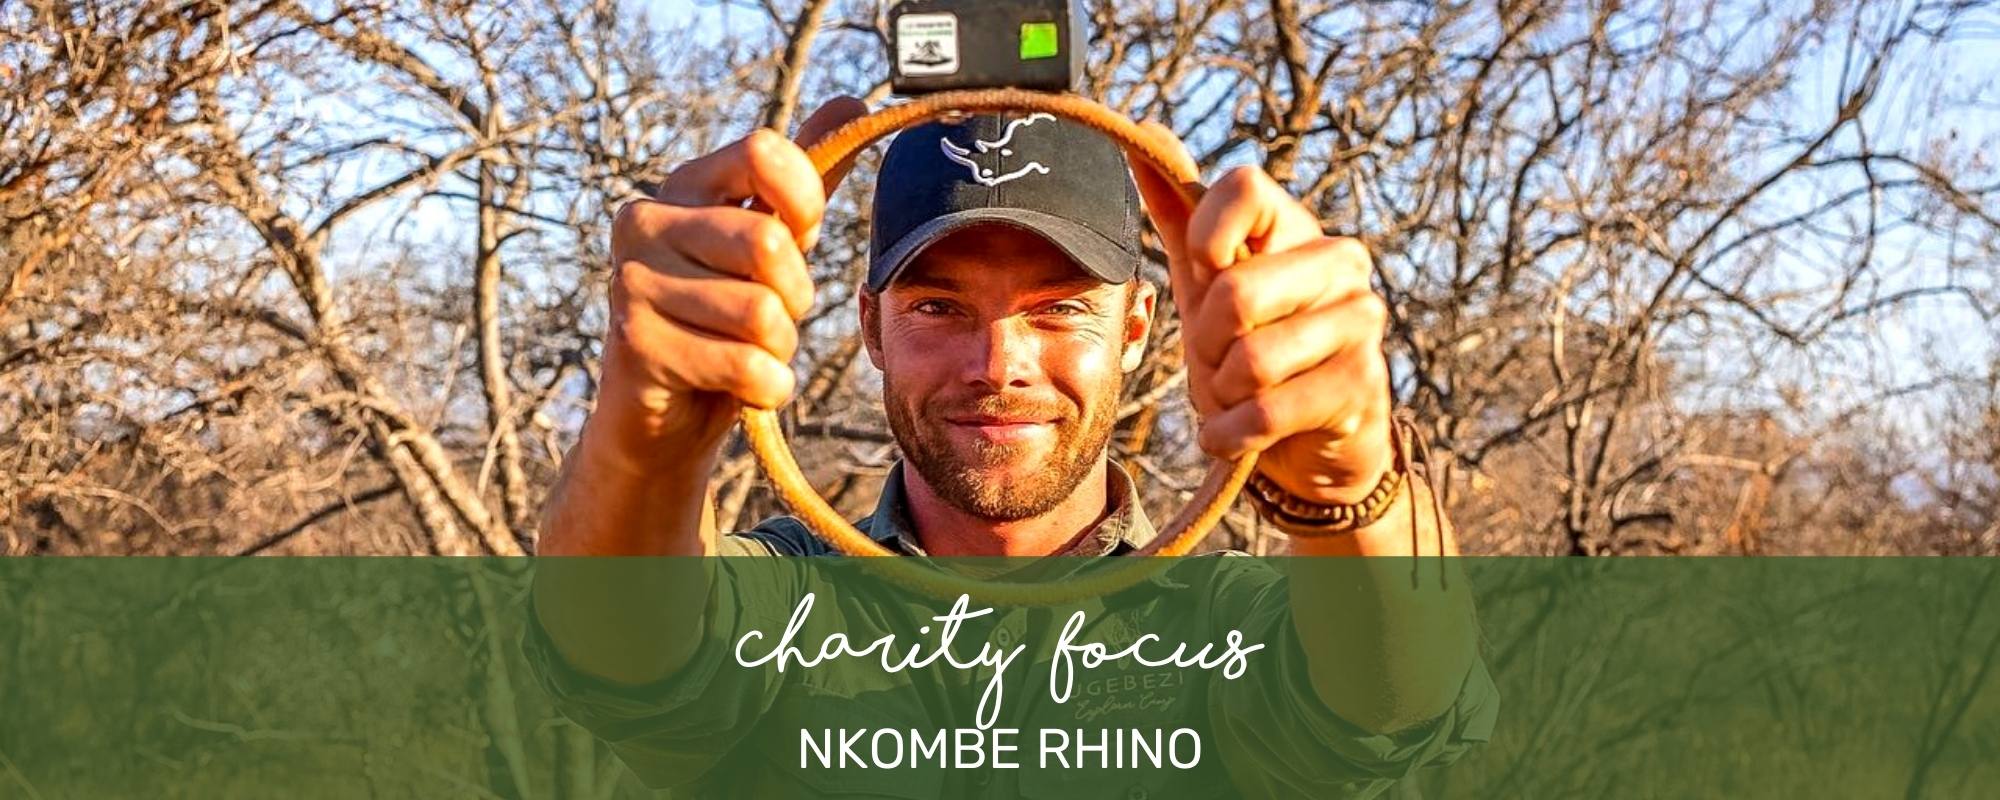 CHARITY FOCUS: NKOMBE RHINO